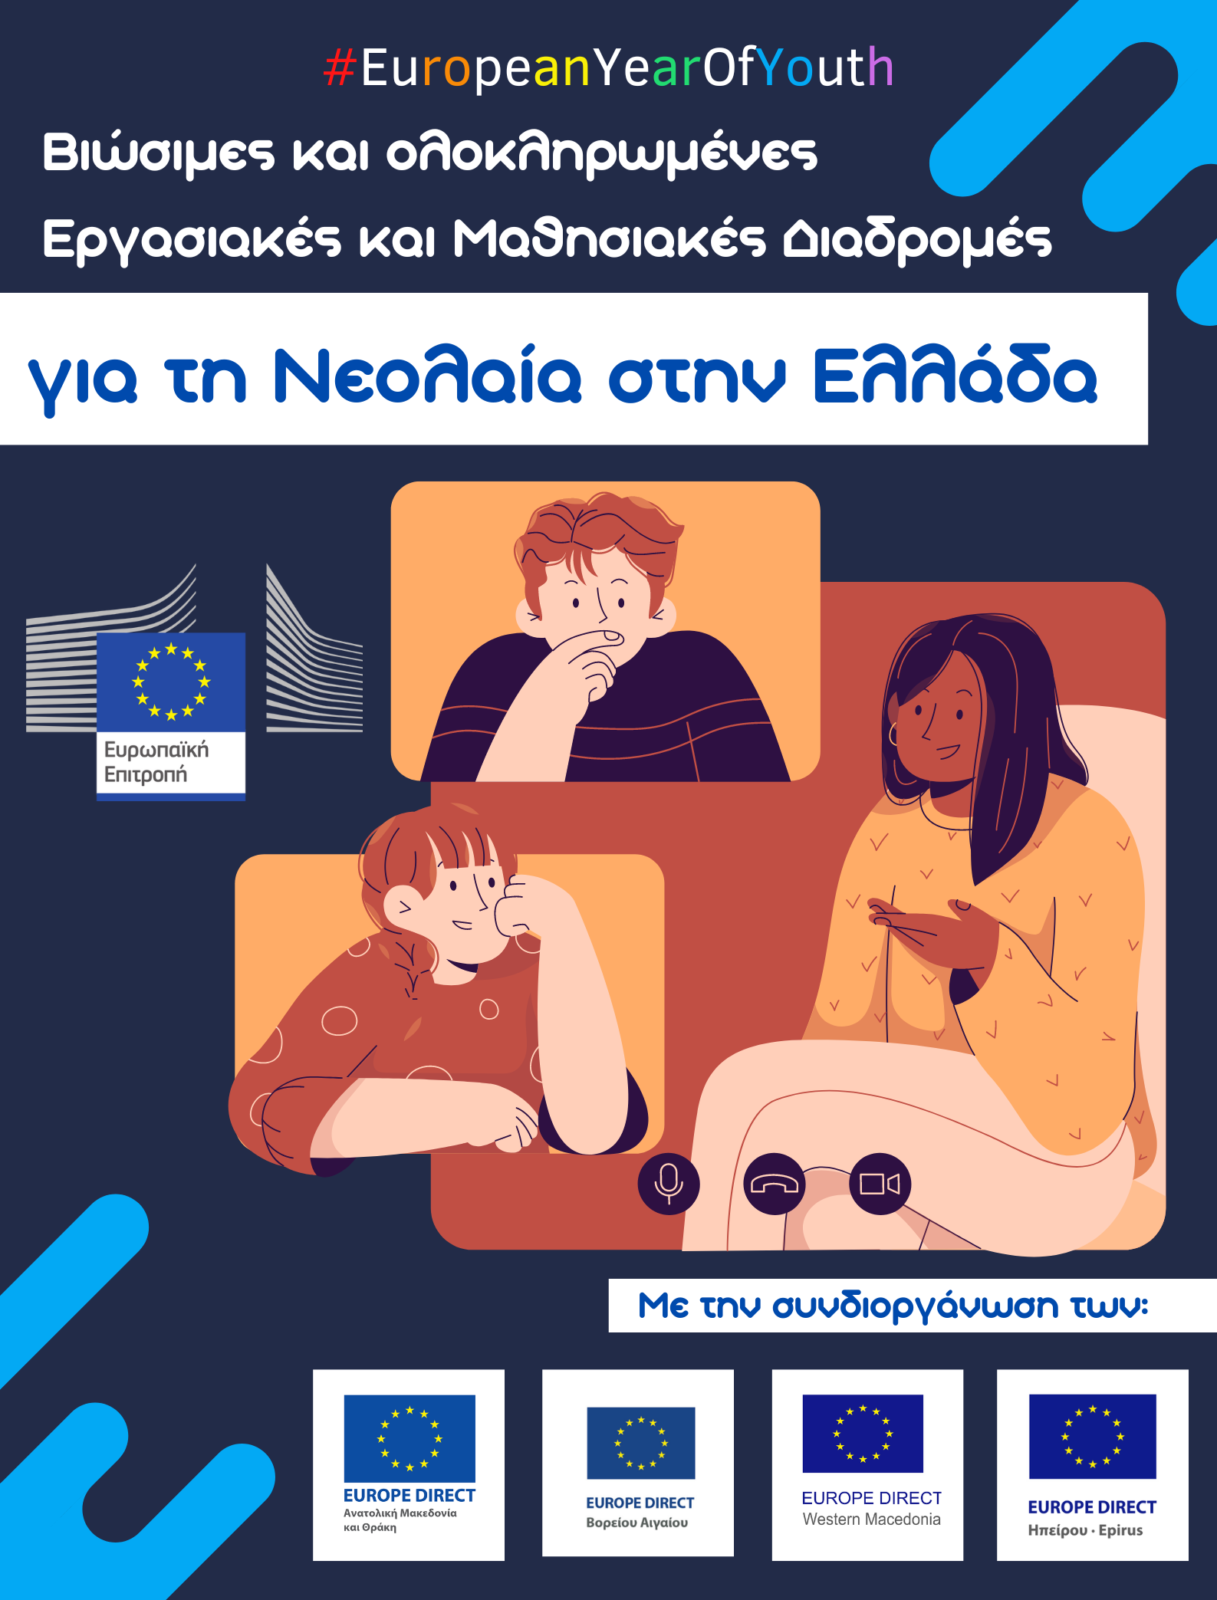 Το Europe Direct Δυτικής Μακεδονίας συμμετέχει στη συζήτηση για τις “Βιώσιμες και ολοκληρωμένες εργασιακές και μαθησιακές διαδρομές για τη νεολαία στην Ελλάδα”